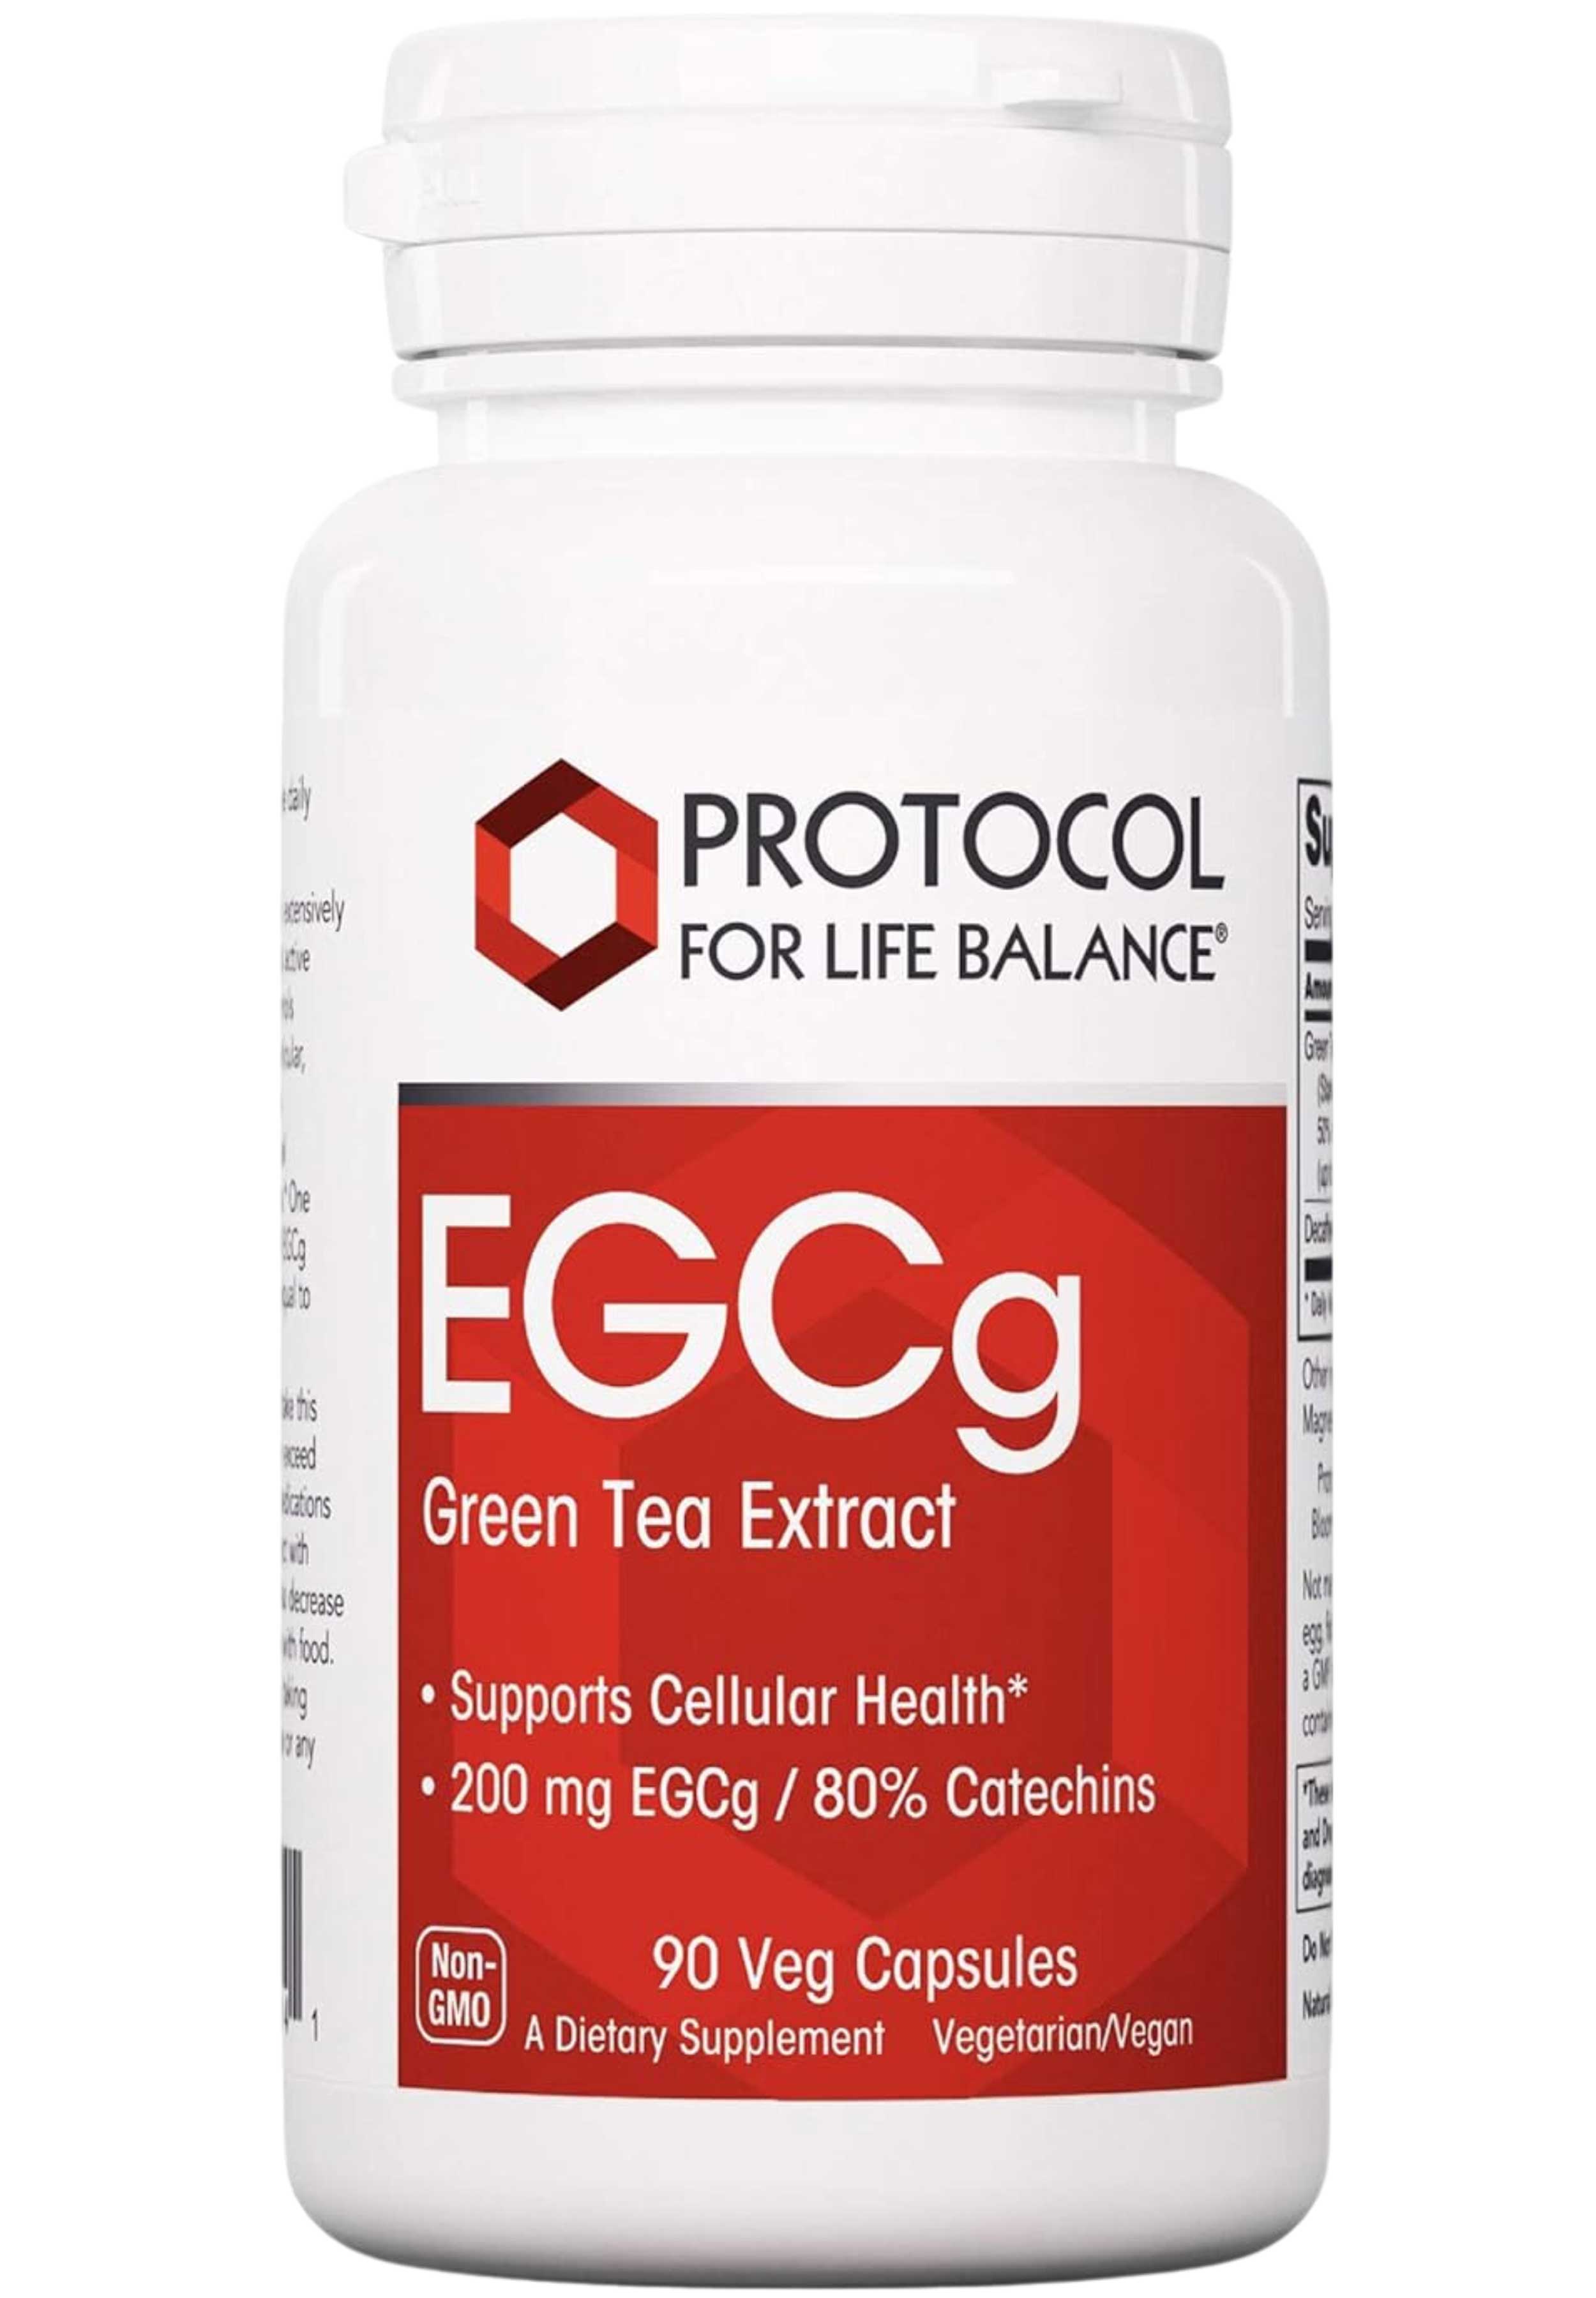 Protocol for Life Balance EGCg Green Tea Extract